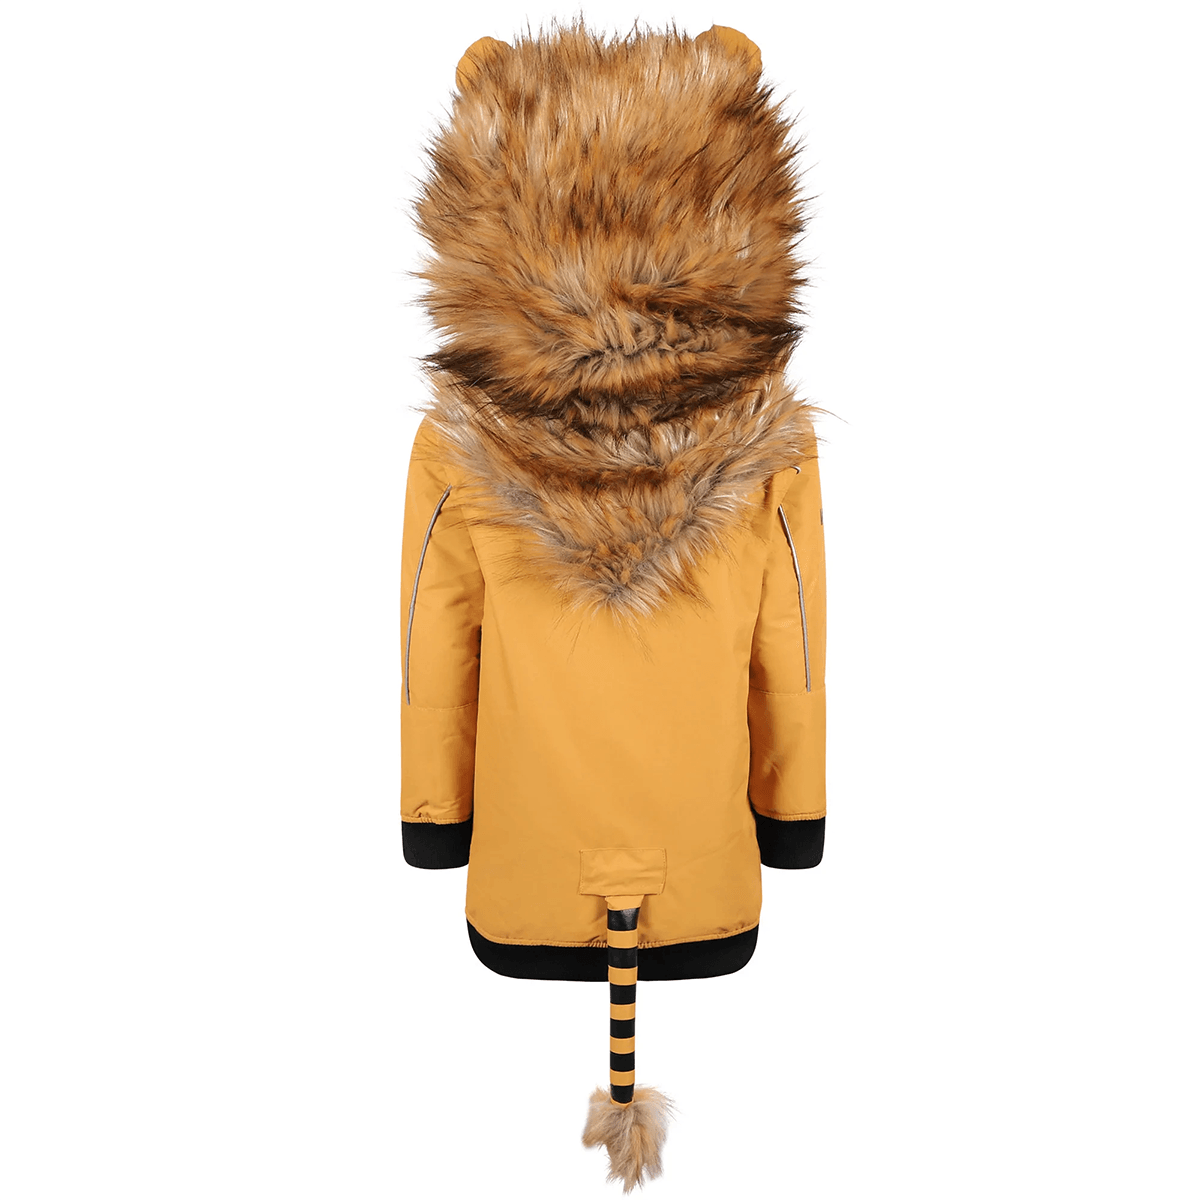 Lion Snow Jacket (UB) - pikkorisport